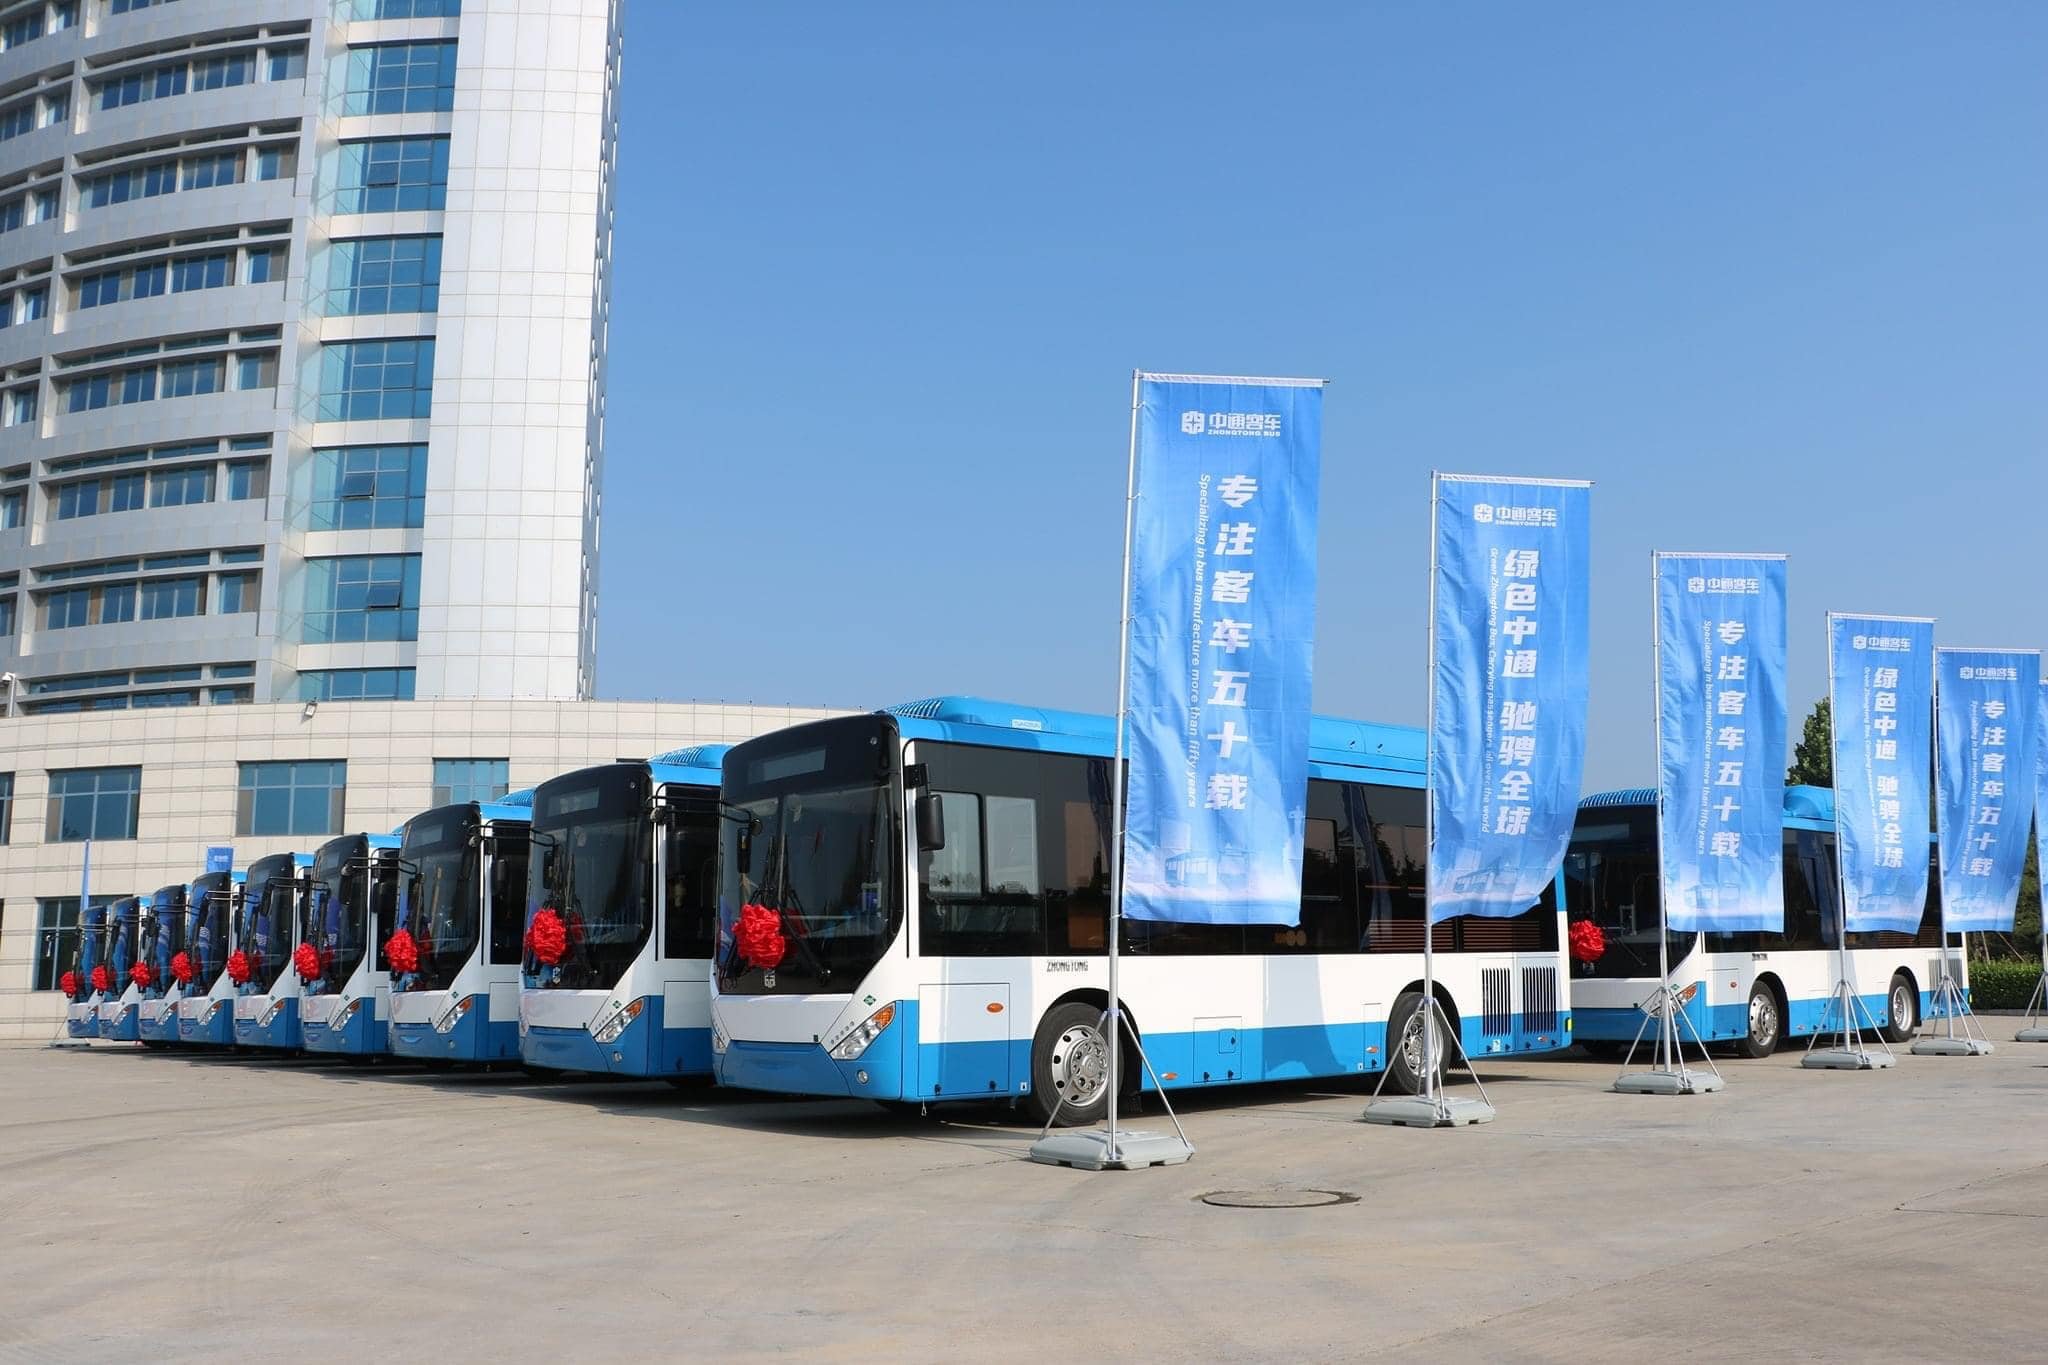 211 նոր ավտոբուսները շահագործելու է Երեւանի քաղաքապետարանի հիմնադրած «Երևանտրանս» ՓԲԸ-ն